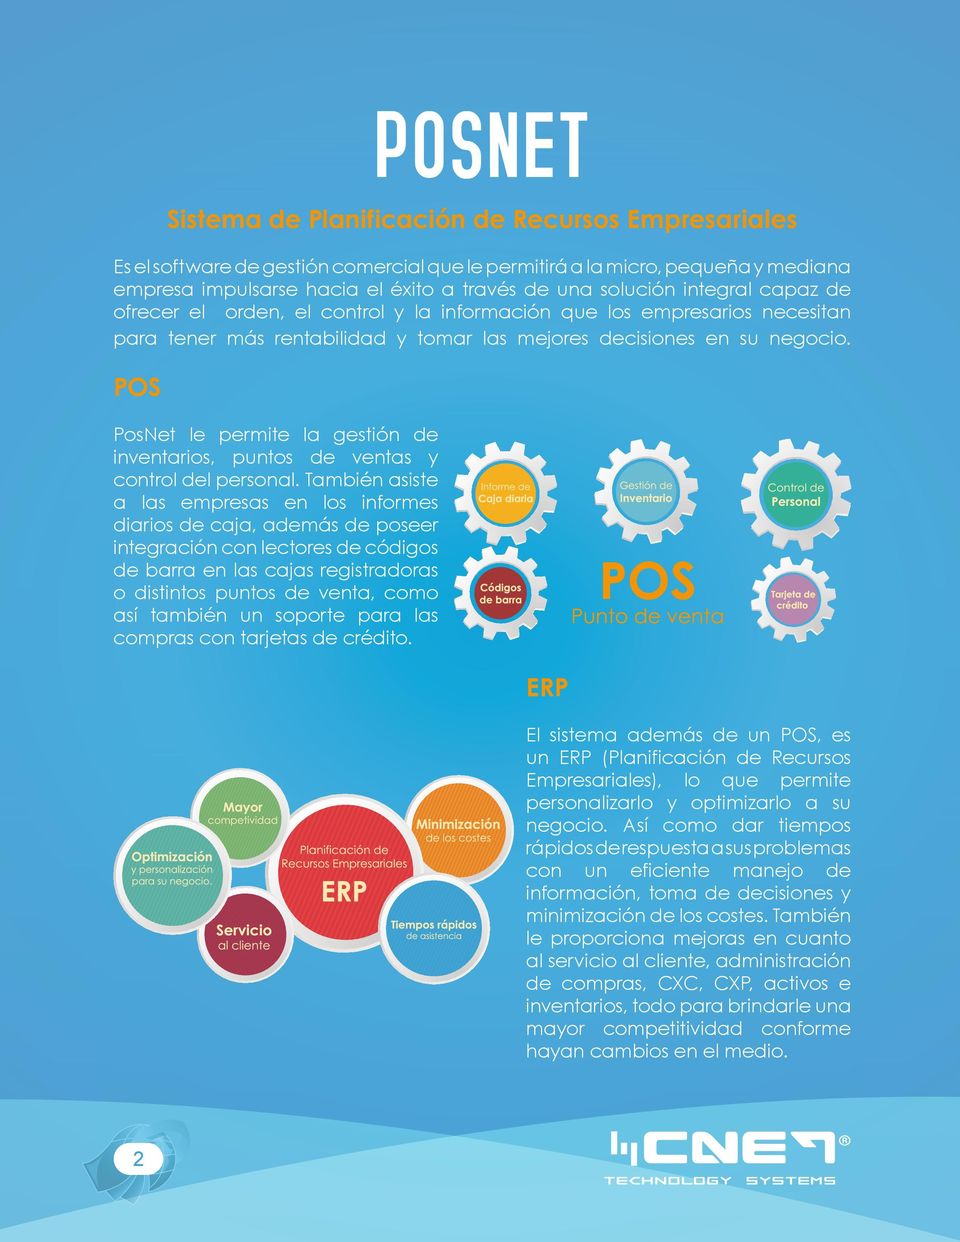 POS PosNet le permite la gestión de inventarios, puntos de ventas y control del personal.